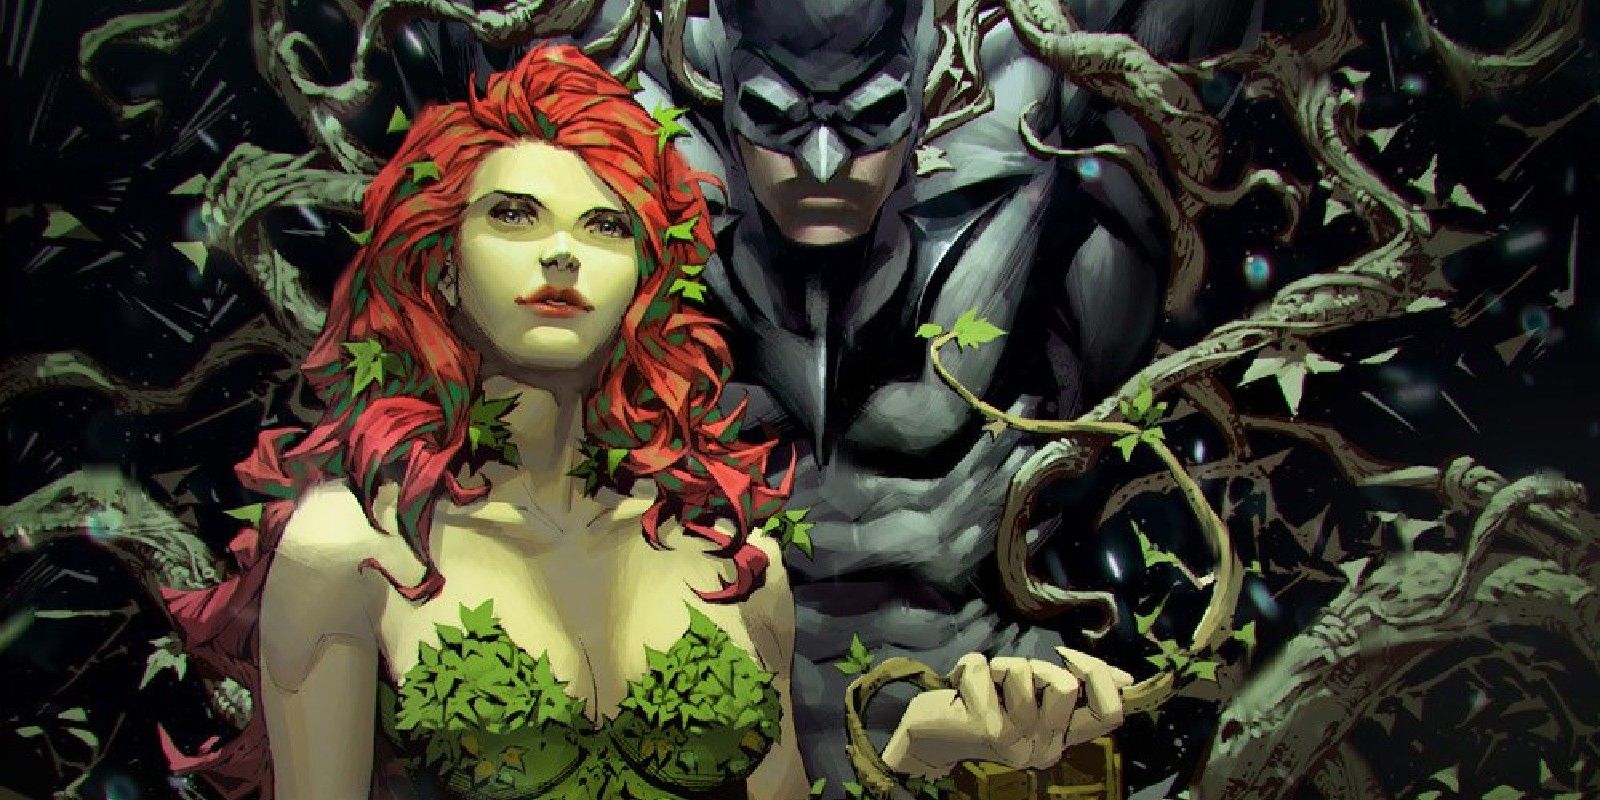 El cosplay de Batman vs Poison Ivy transforma el arte del cómic en una escena lista para la cámara